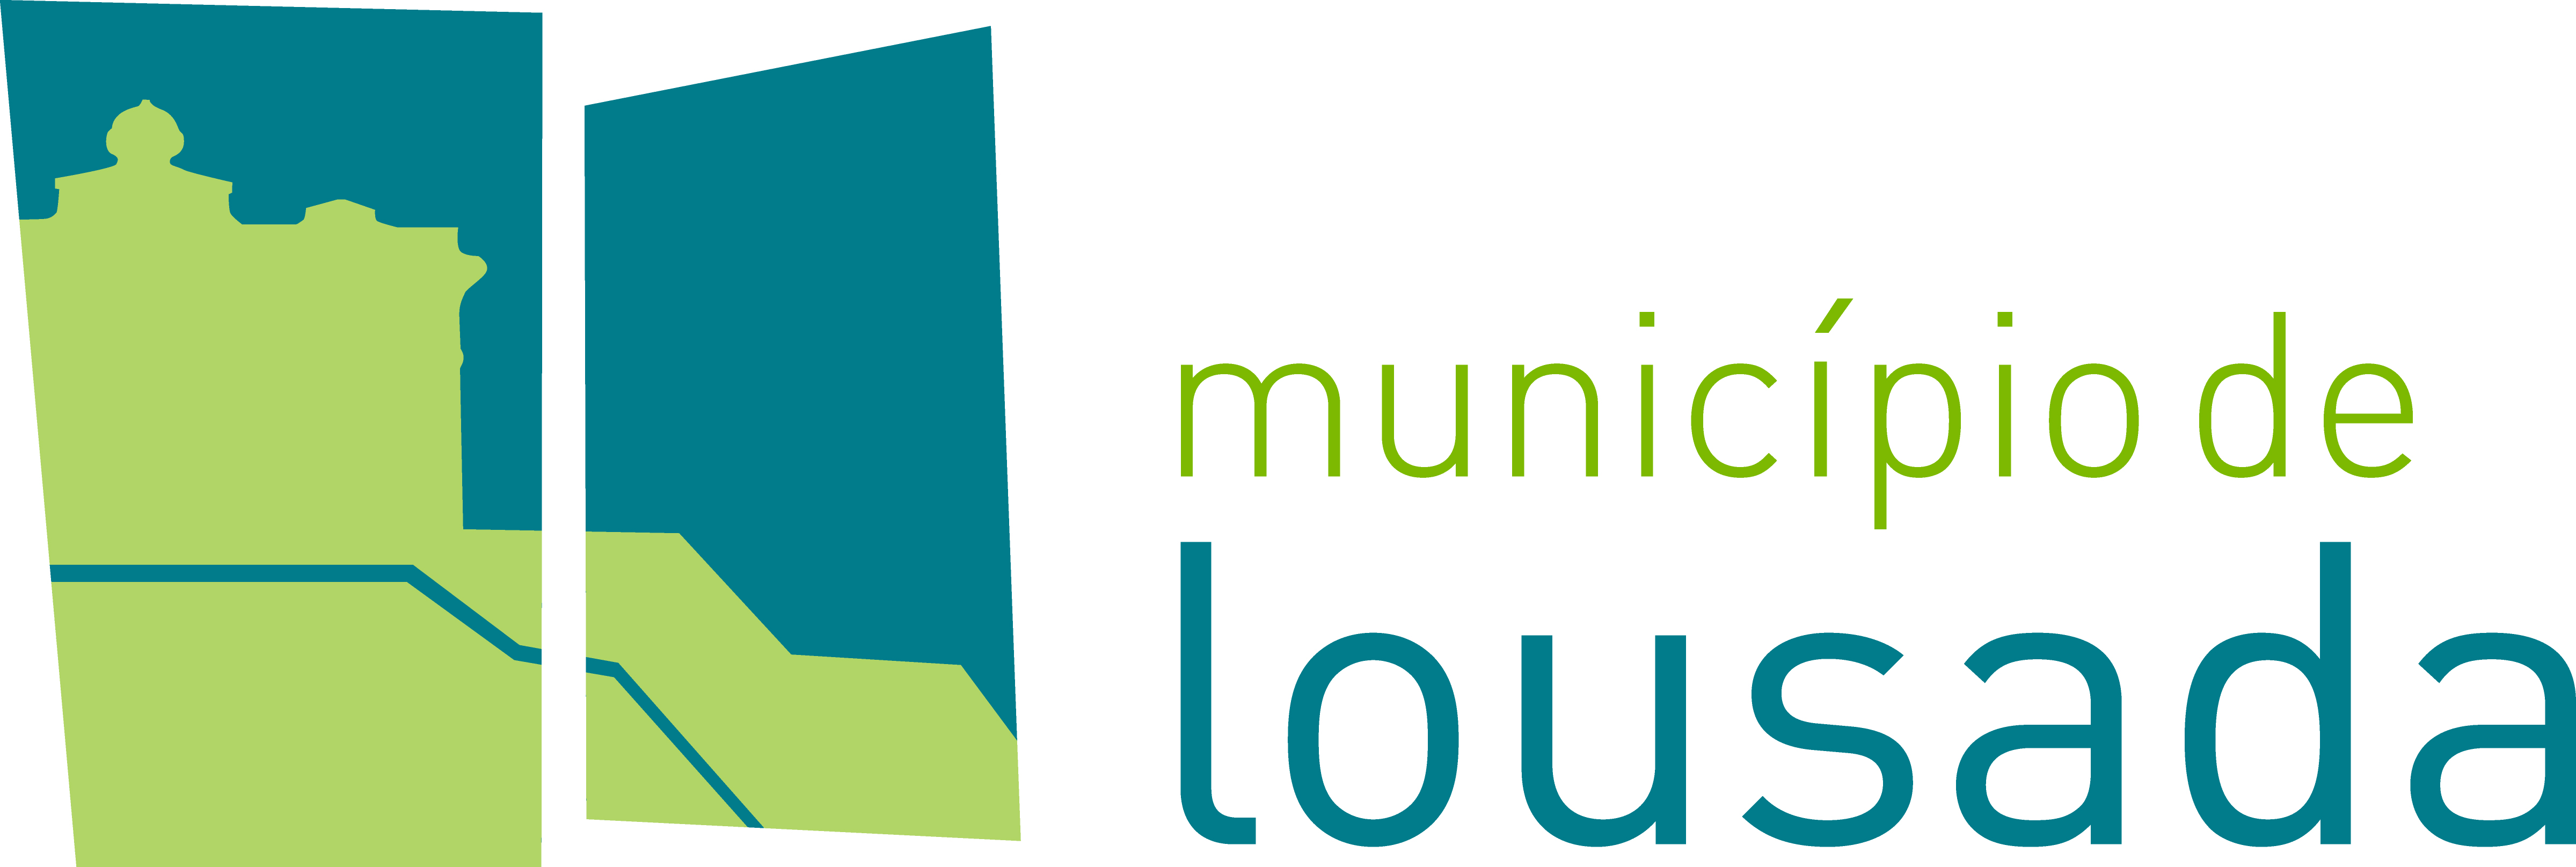 Municipio Lousada logo